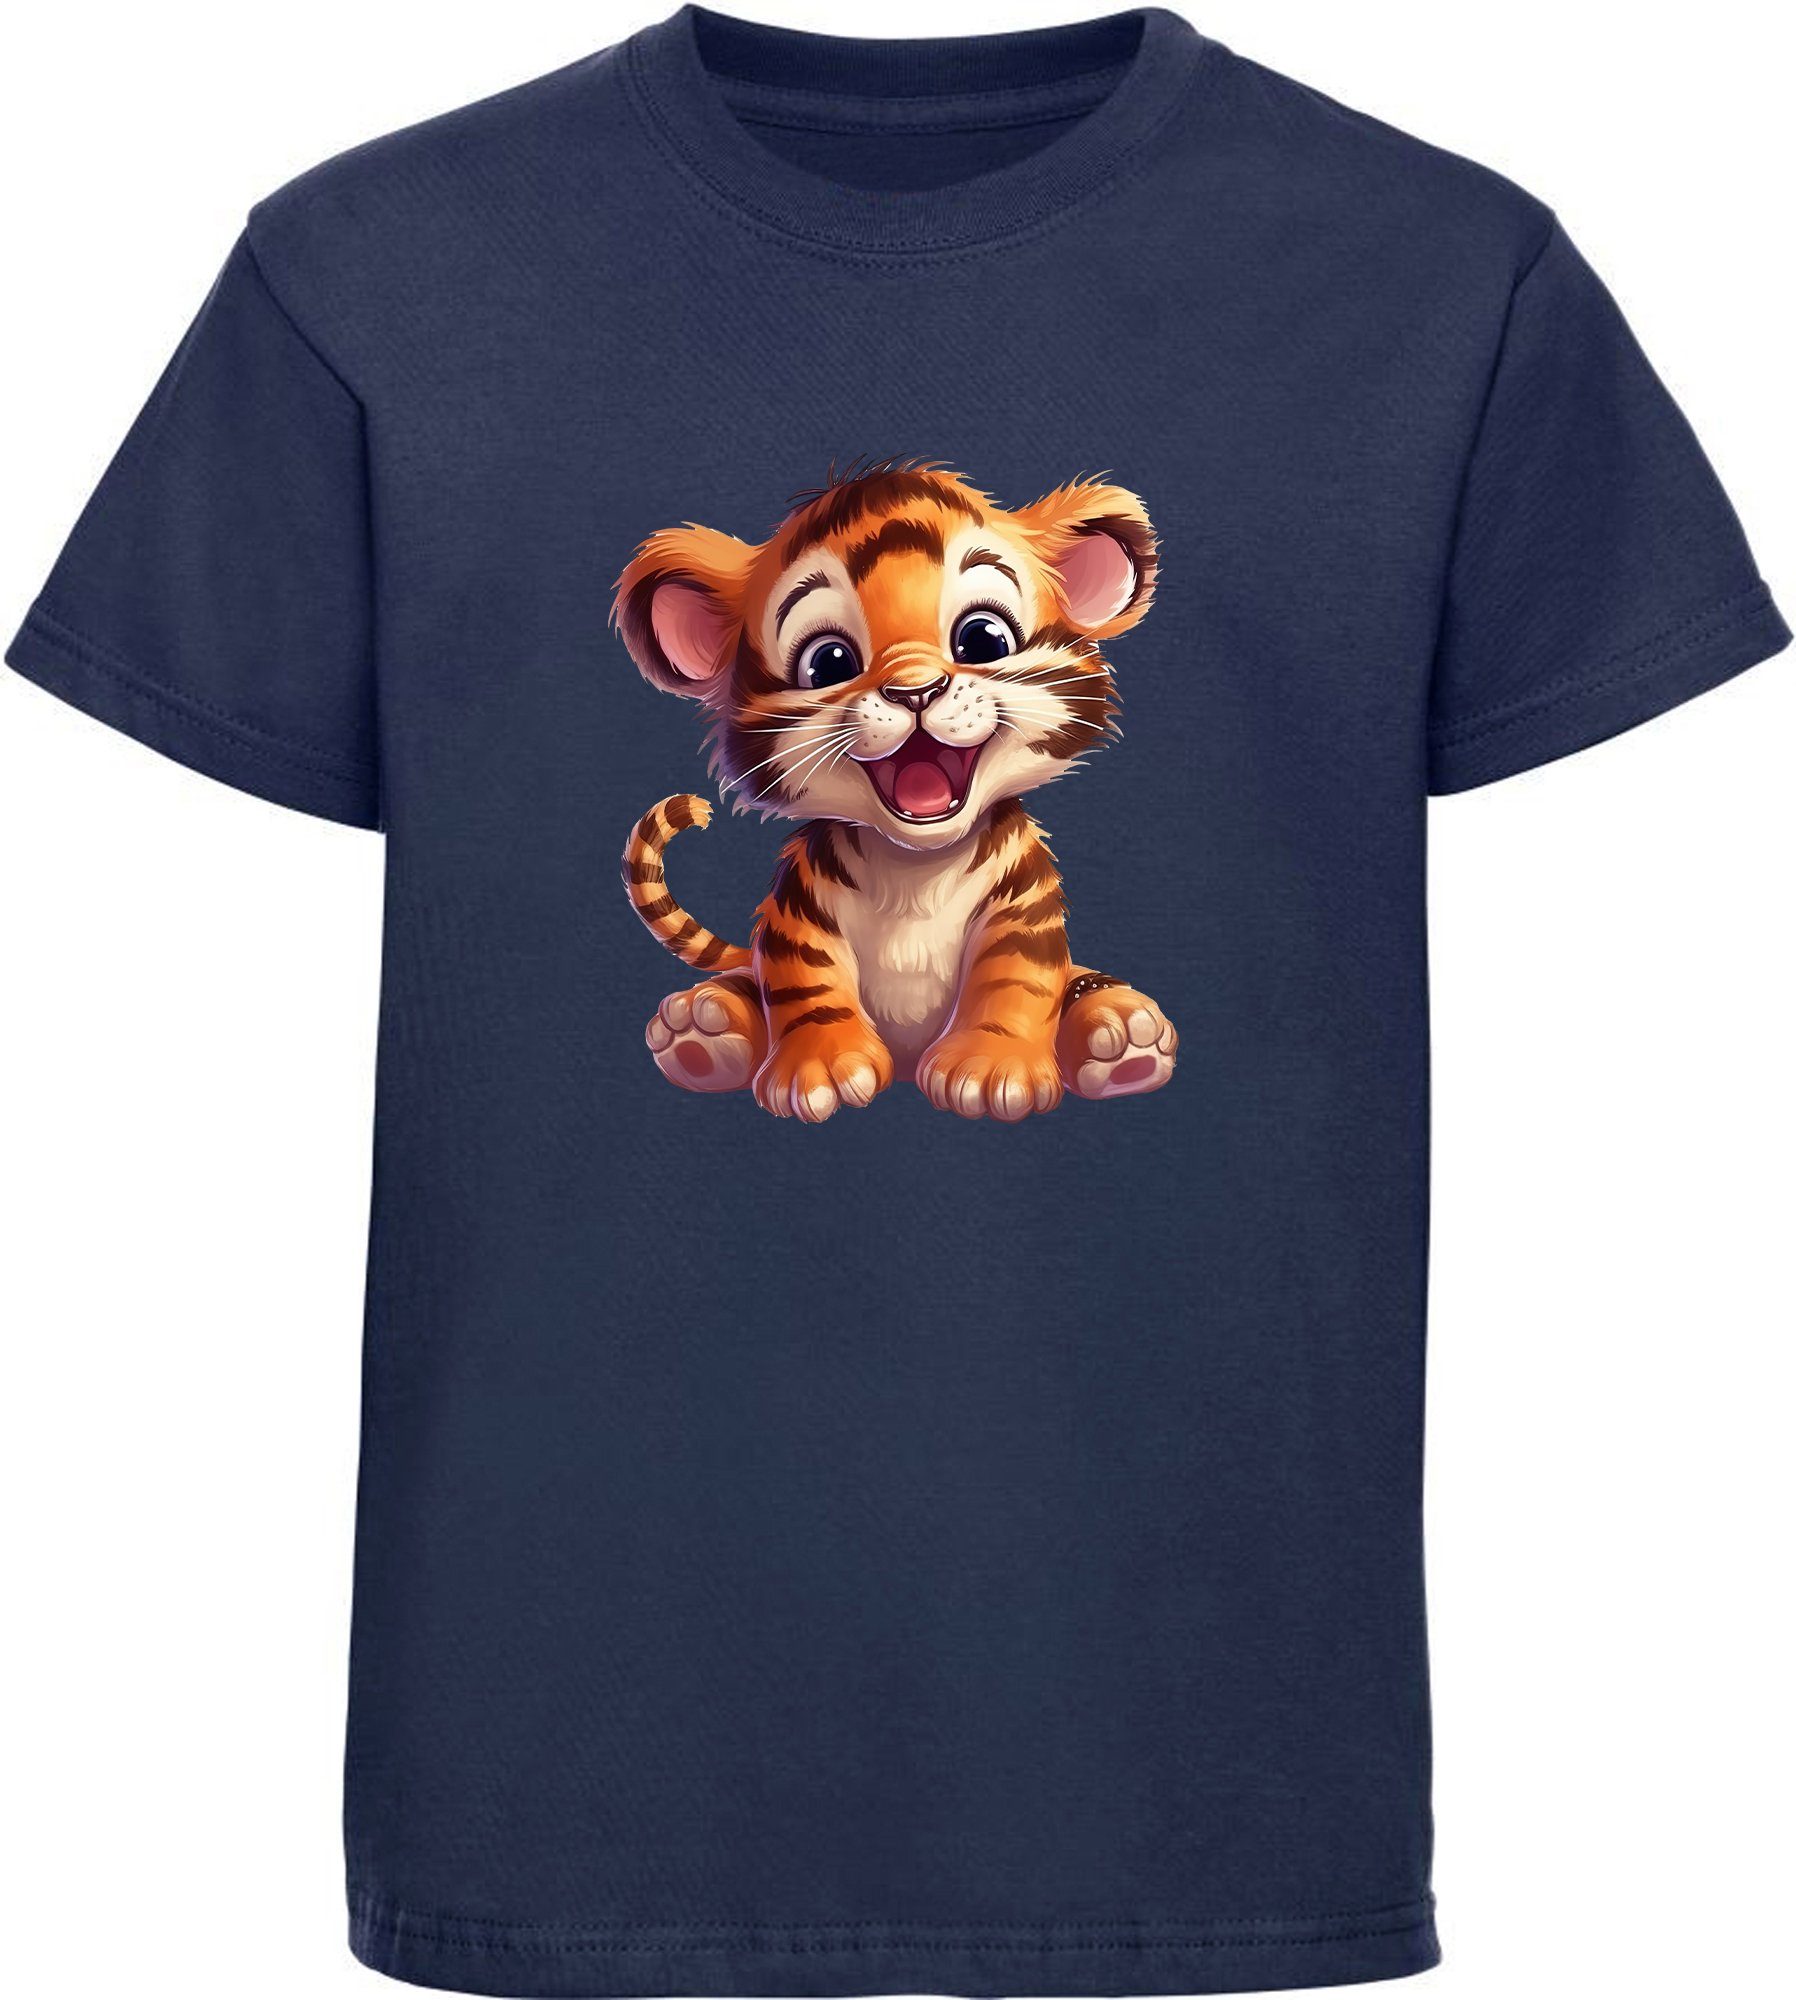 Vertrauen und Qualität an erster Stelle MyDesign24 T-Shirt Kinder Wildtier Print Aufdruck, bedruckt Baby navy Tiger i266 - mit blau Baumwollshirt Shirt